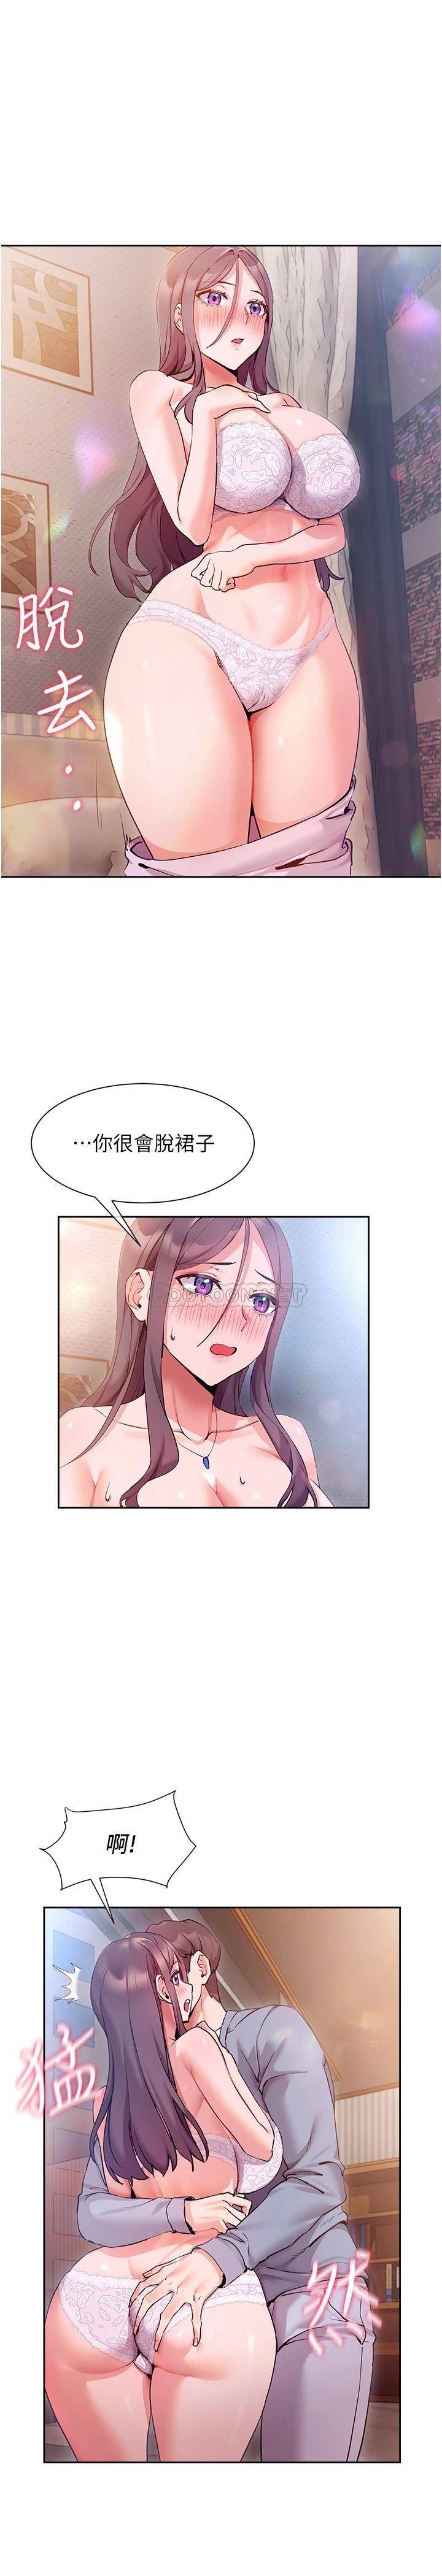 韩国污漫画 現上教學 第12话让你体验乳交的快感! 12